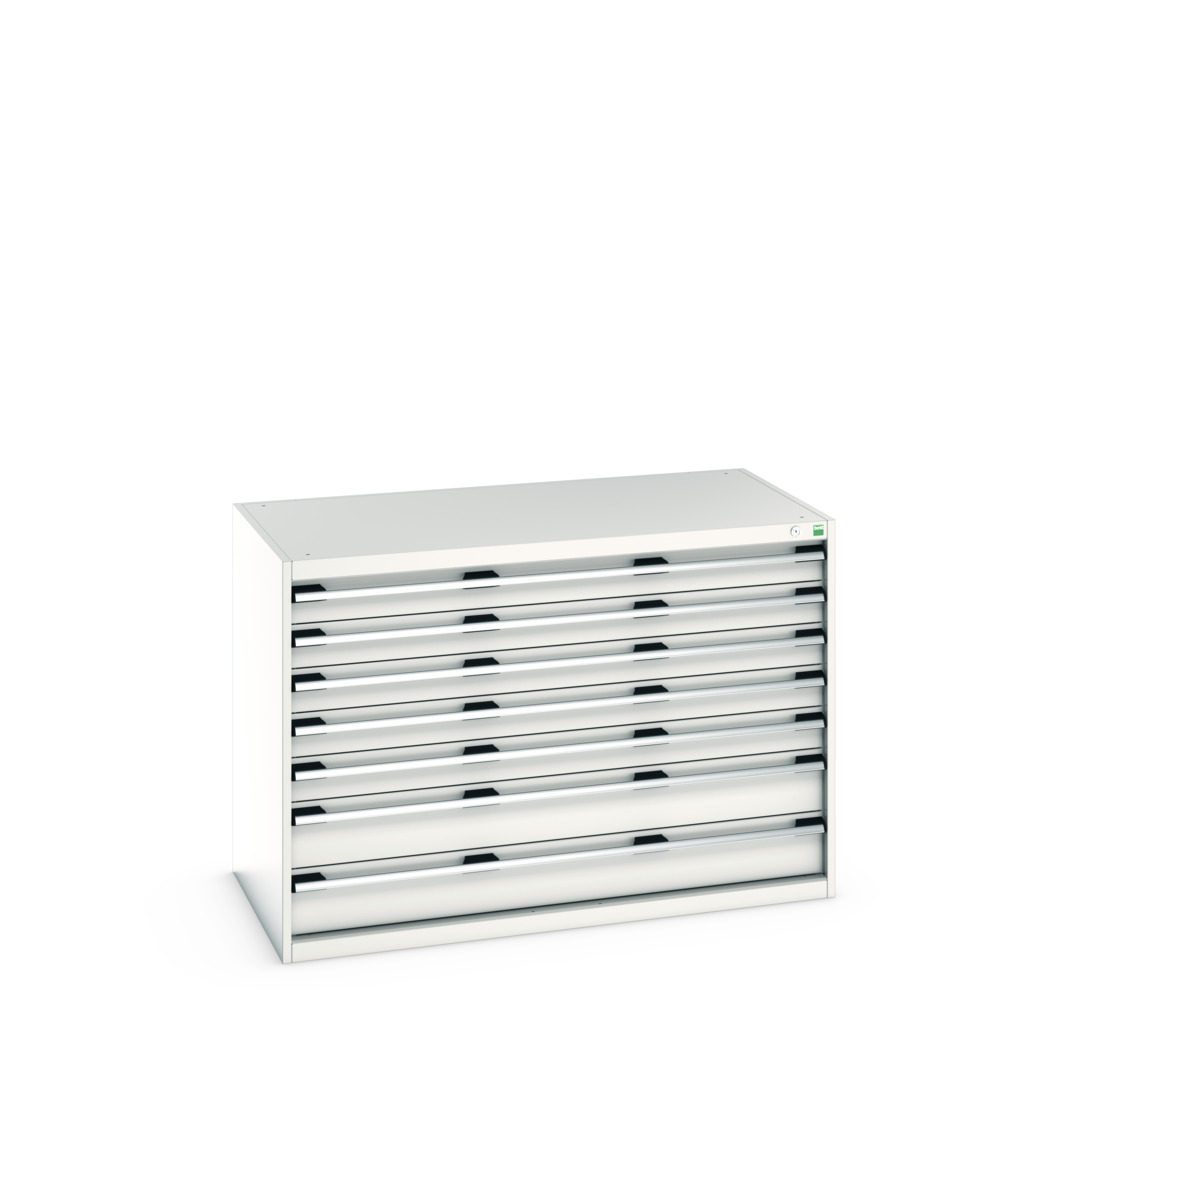 40030088.16V - cubio drawer cabinet